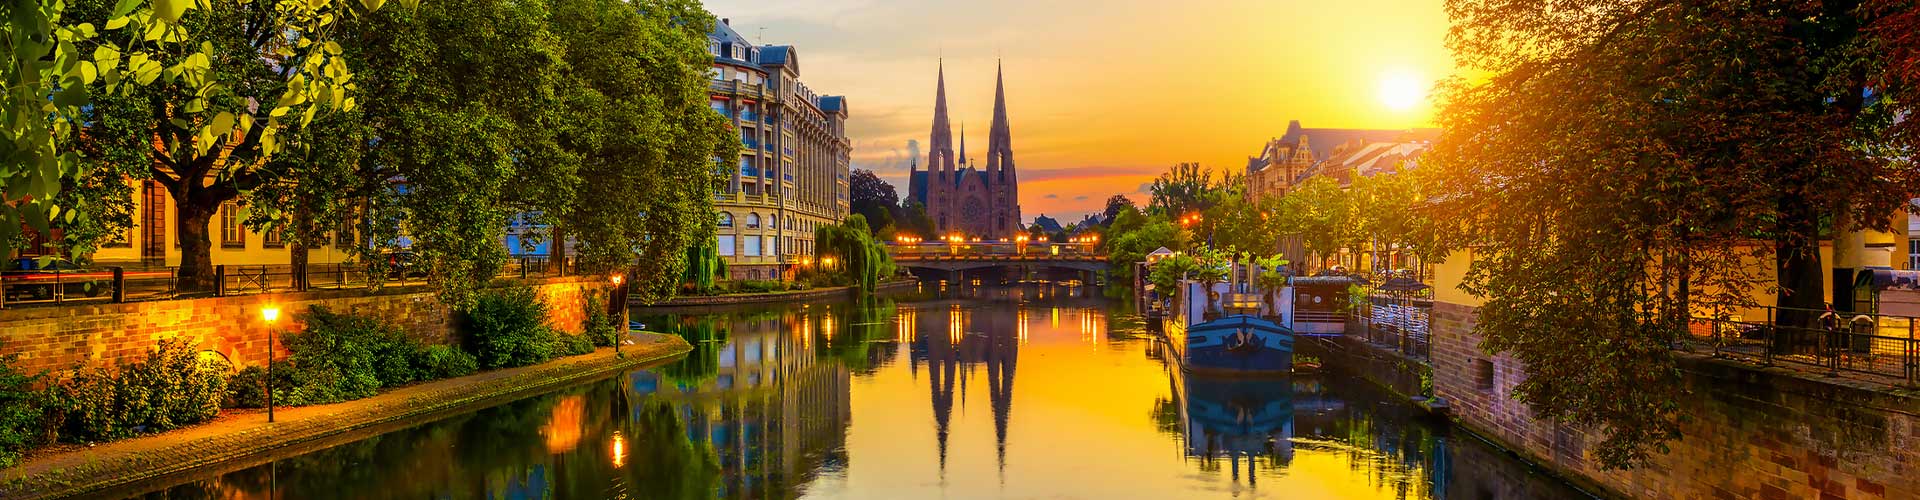 Cathédrale de Strasbourg au soleil couchant